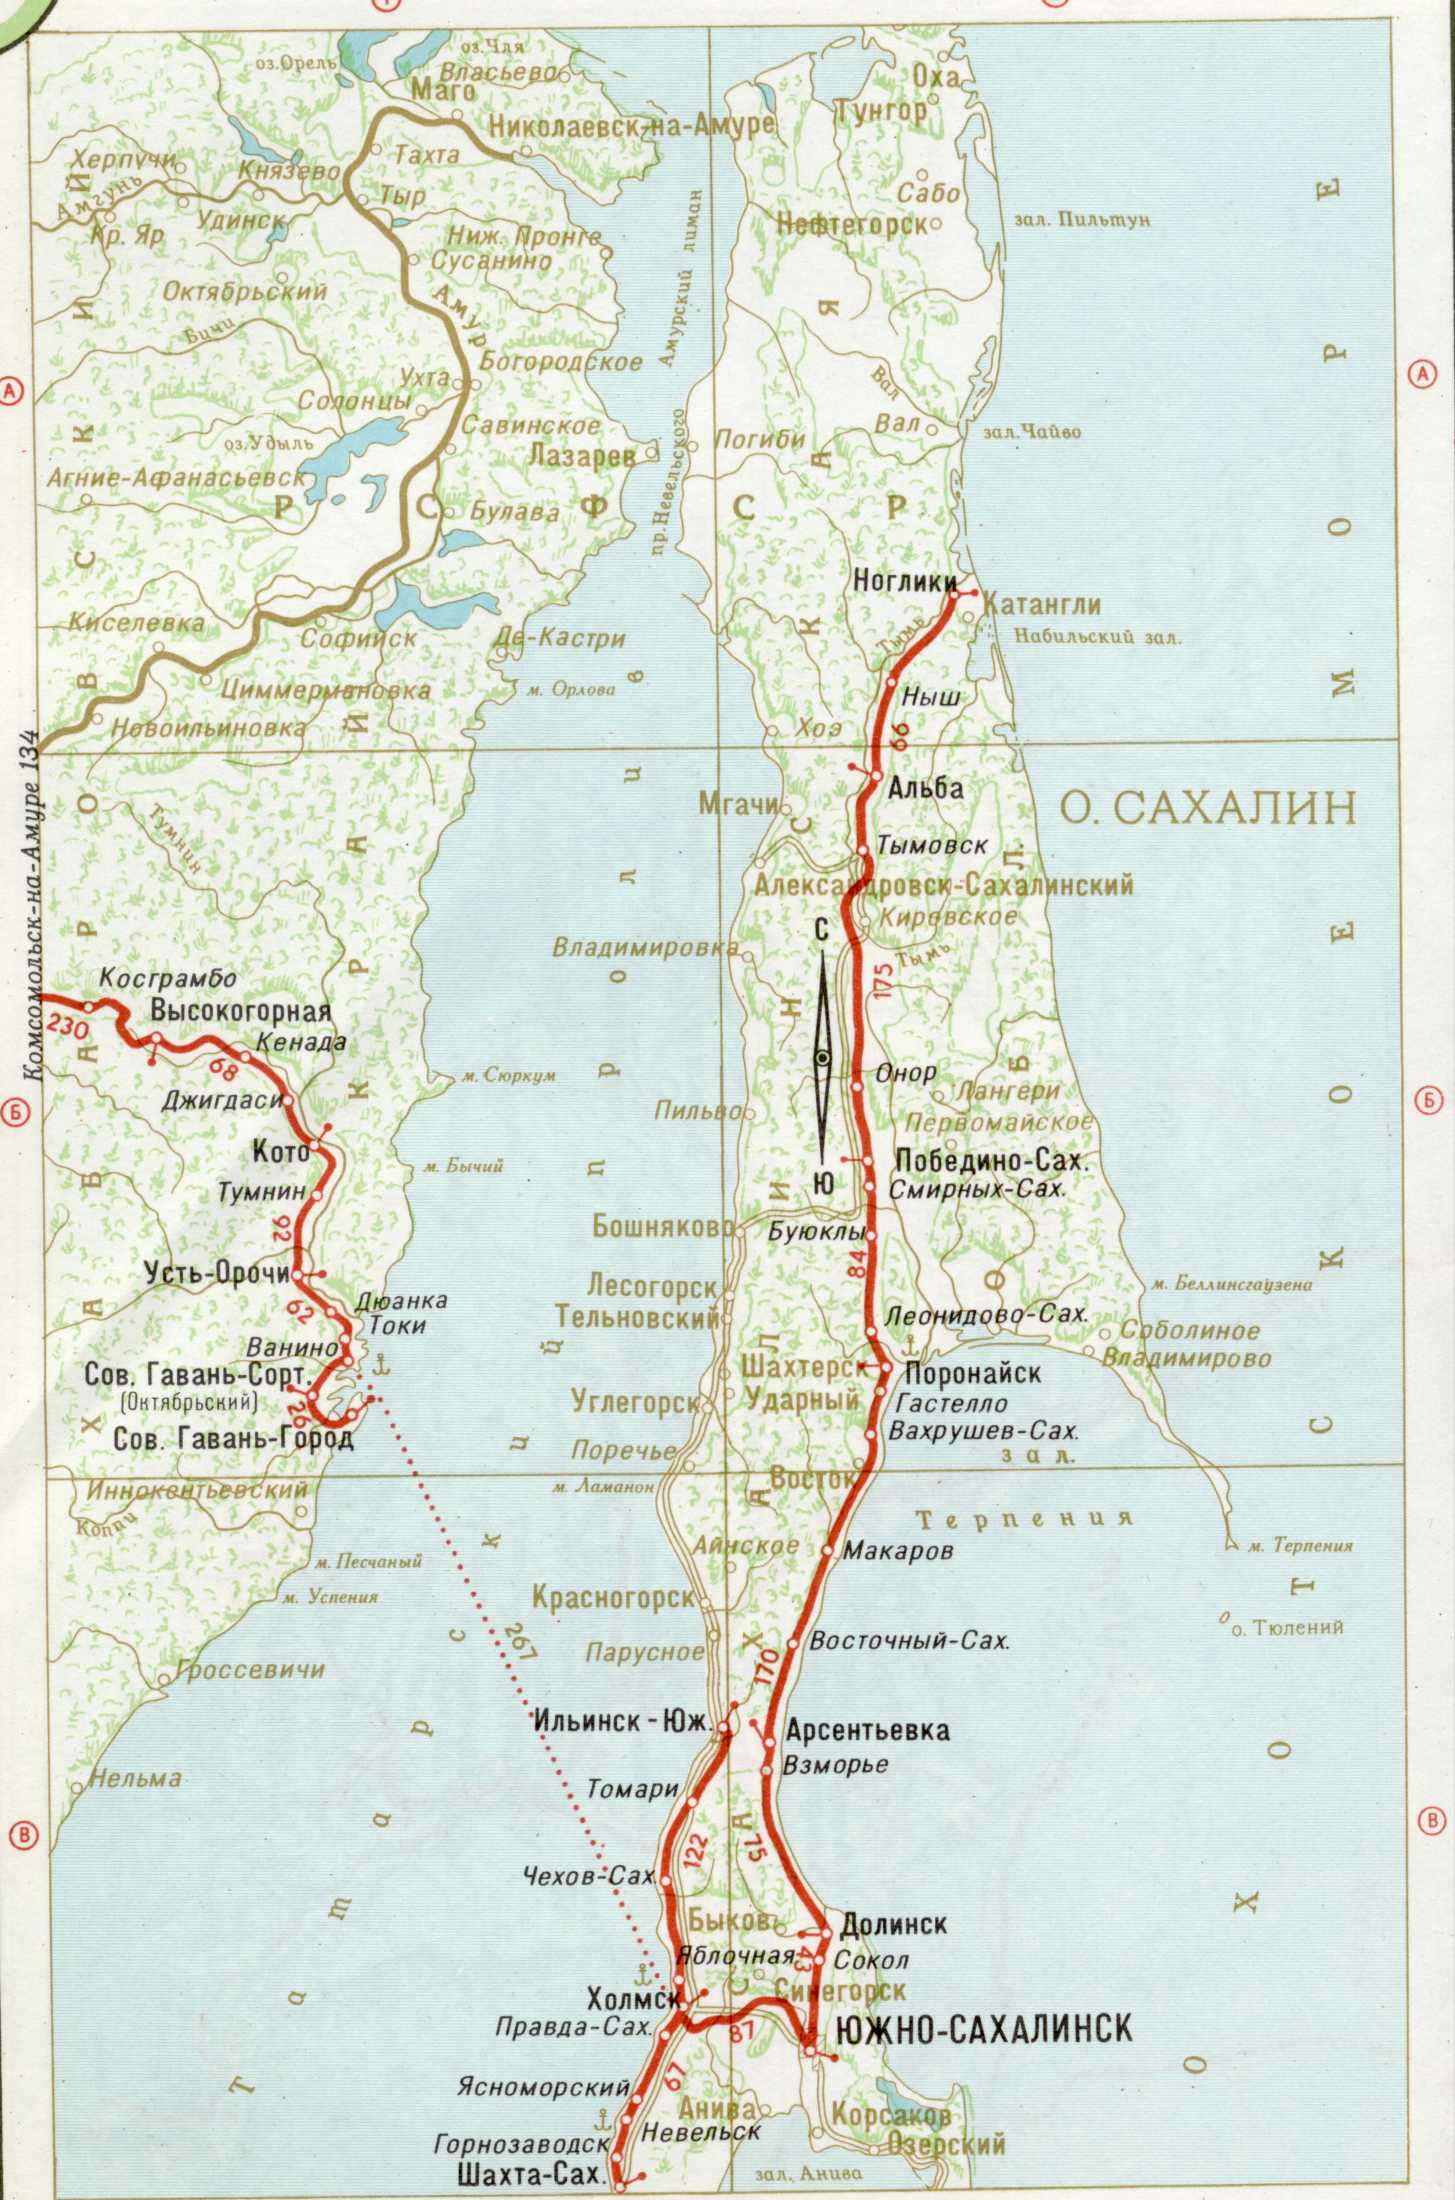 Сахалинская железная дорога в составе Дальневосточной